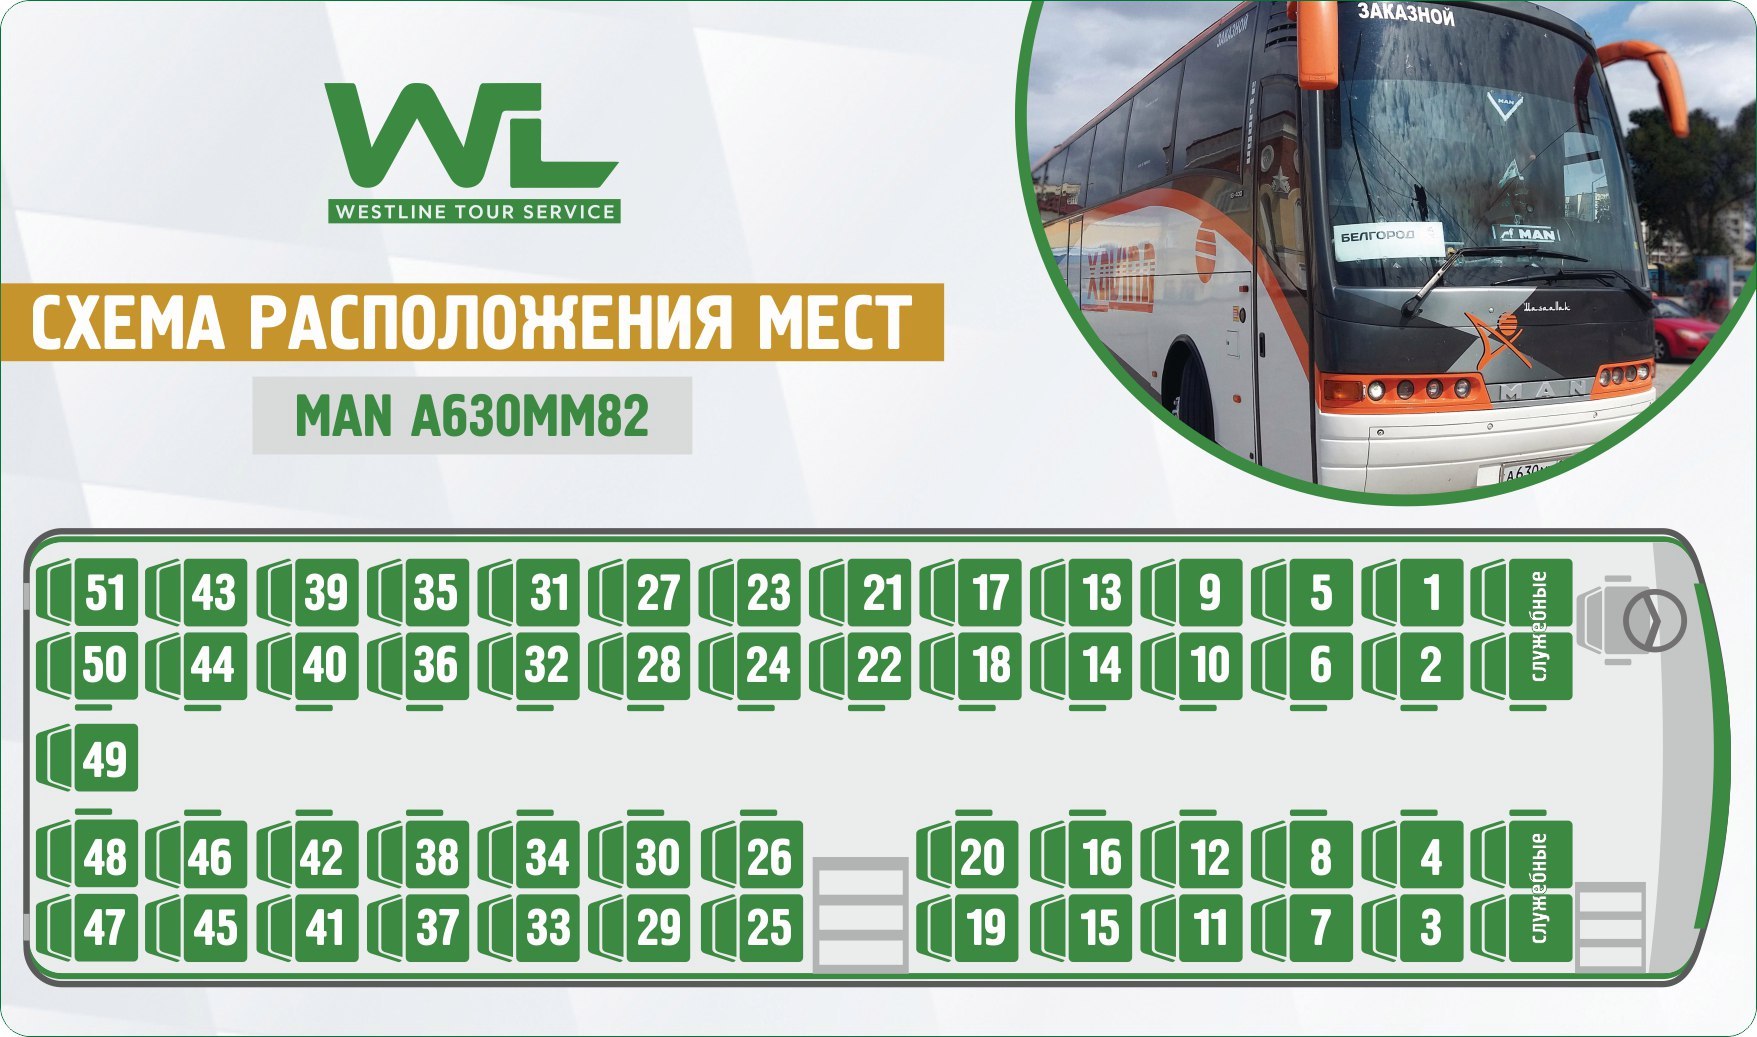 Местоположение автобусов краснодар. Нумерация мест в автобусе сетра. Неоплан 49 автобус расположение мест. Neoplan Neoplan (49 мест). Автобус ман 49 мест схема салона.